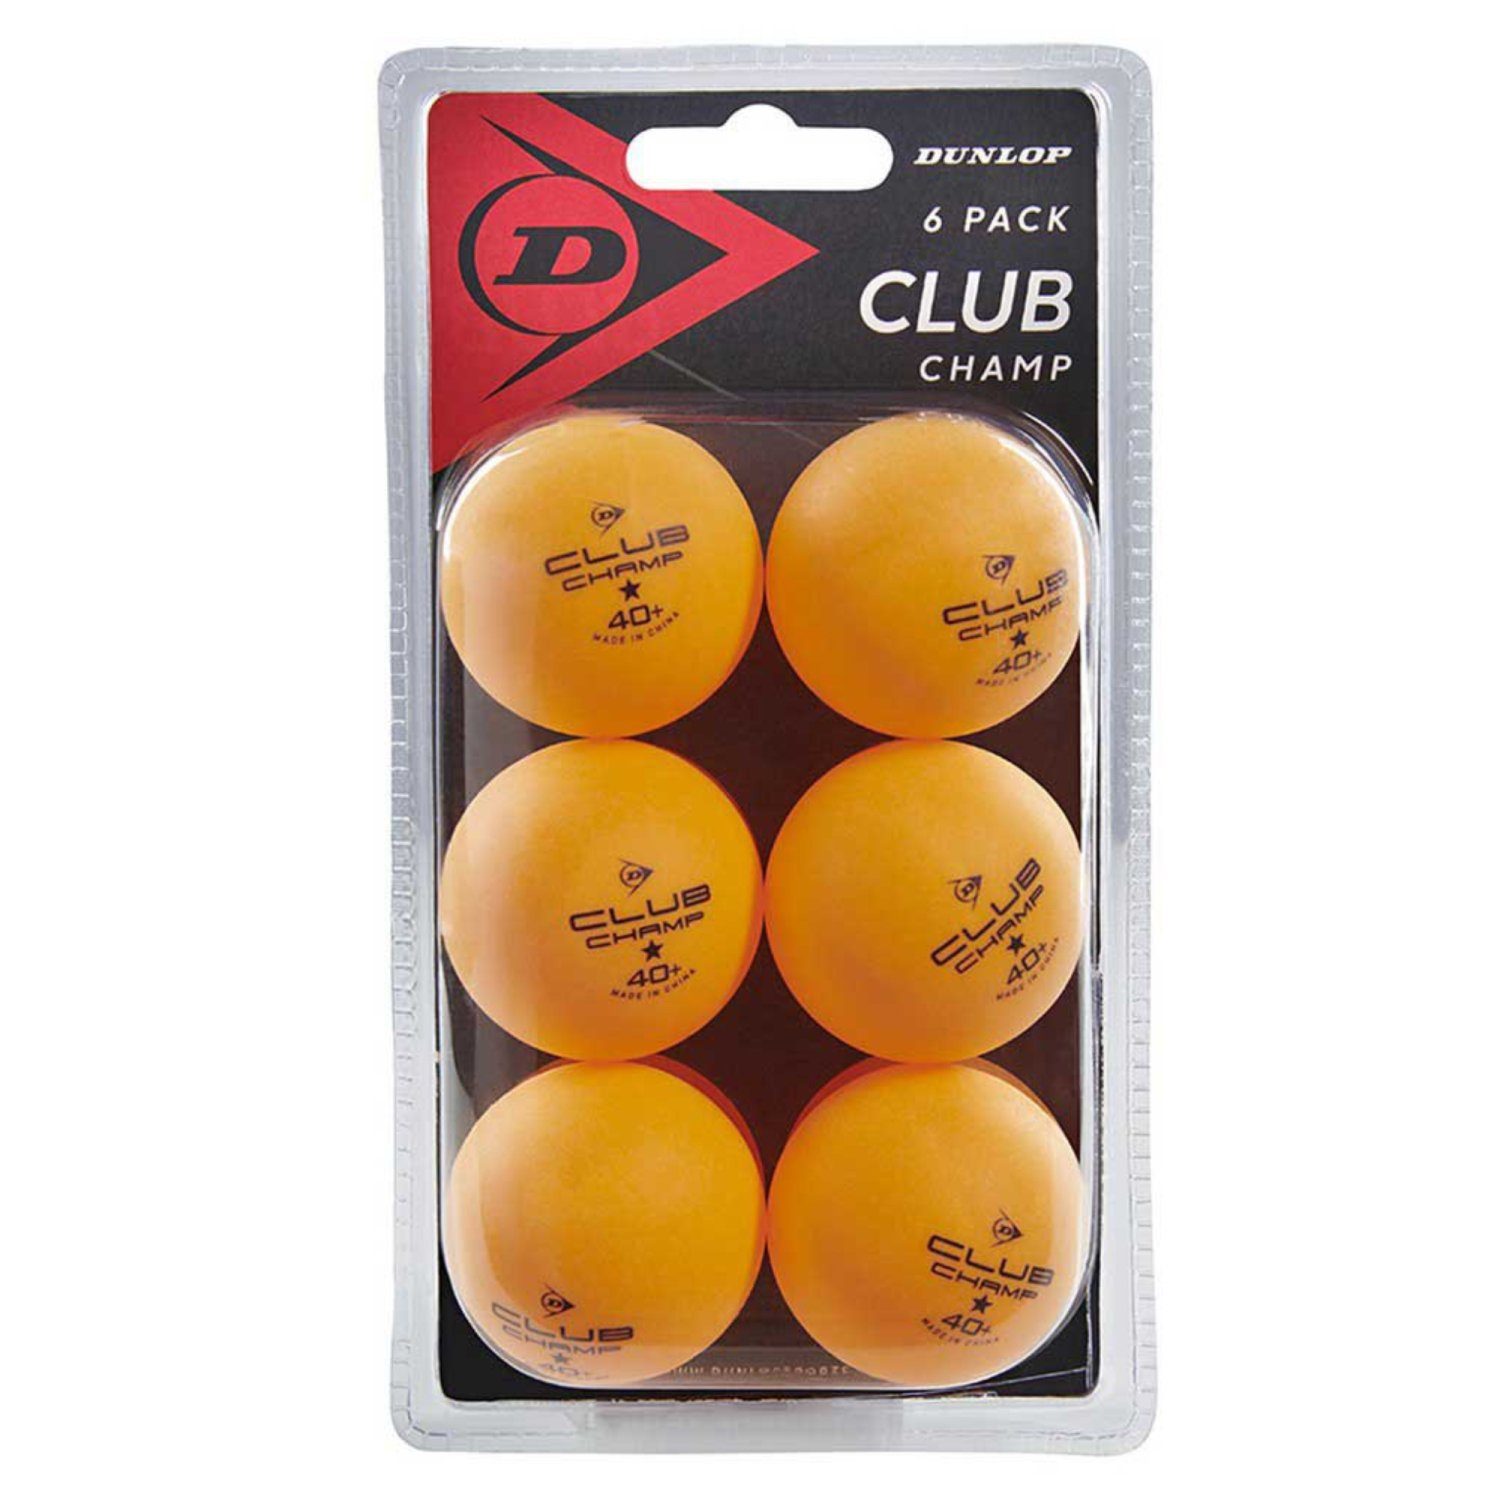 Dunlop Tischtennisball 40+ CLUB CHAMP 6 BALL ORANGE | Sportbälle